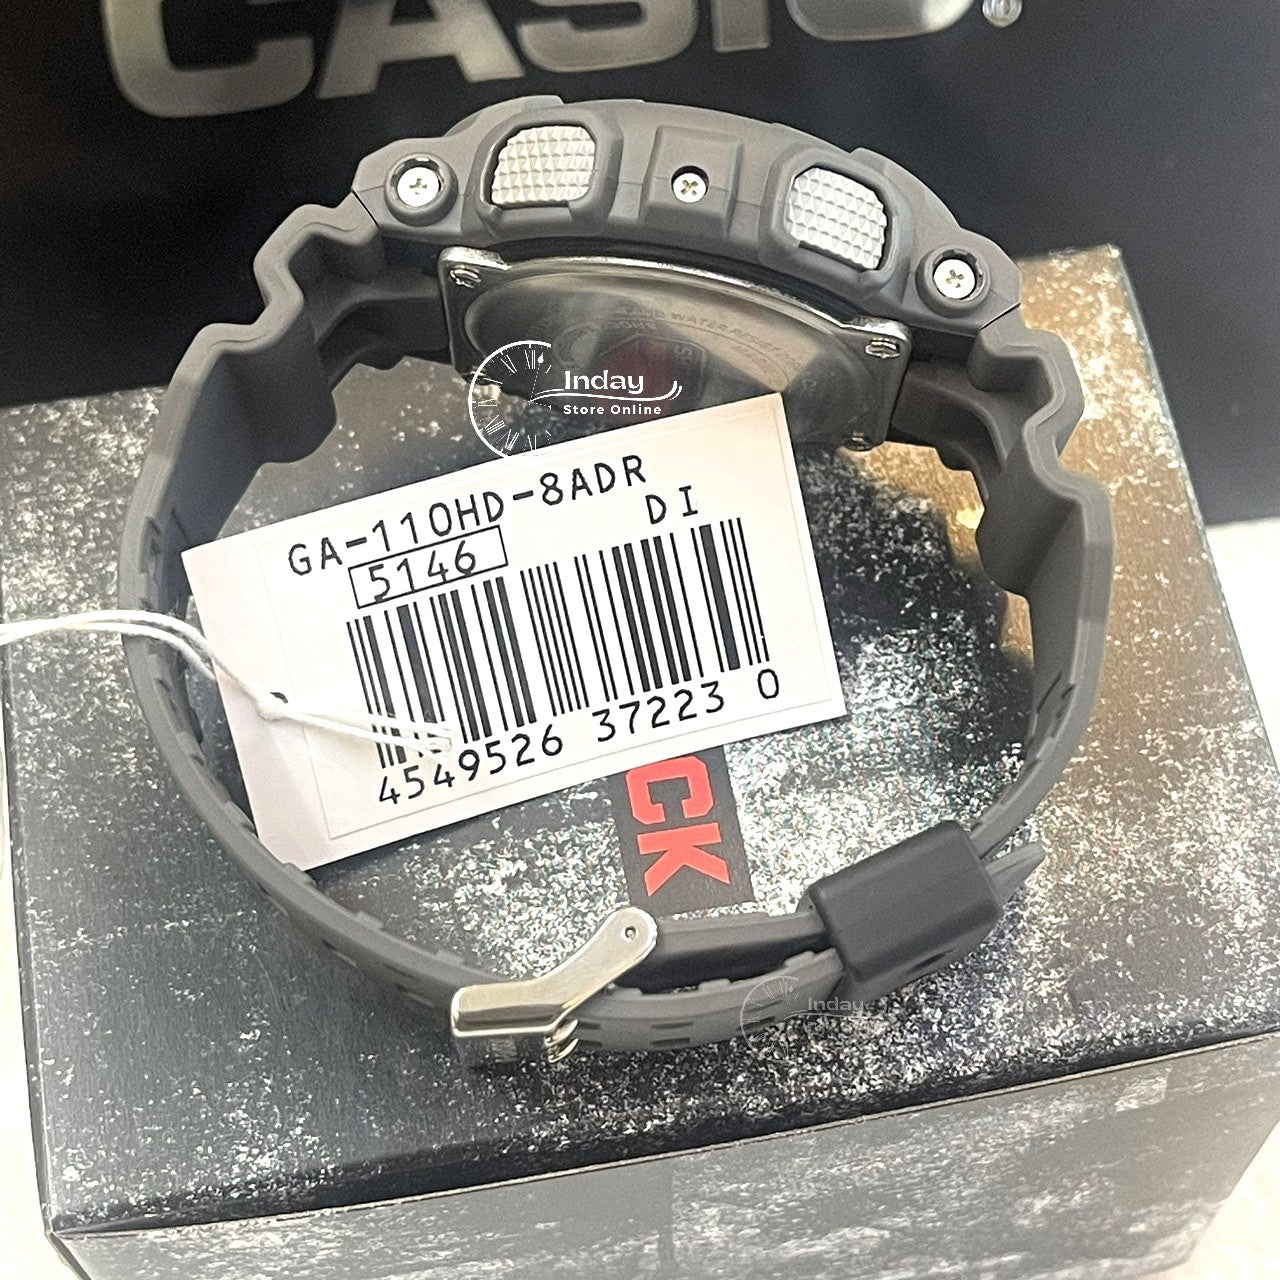 Casio G-Shock Men's Watch GA-110HD-8A